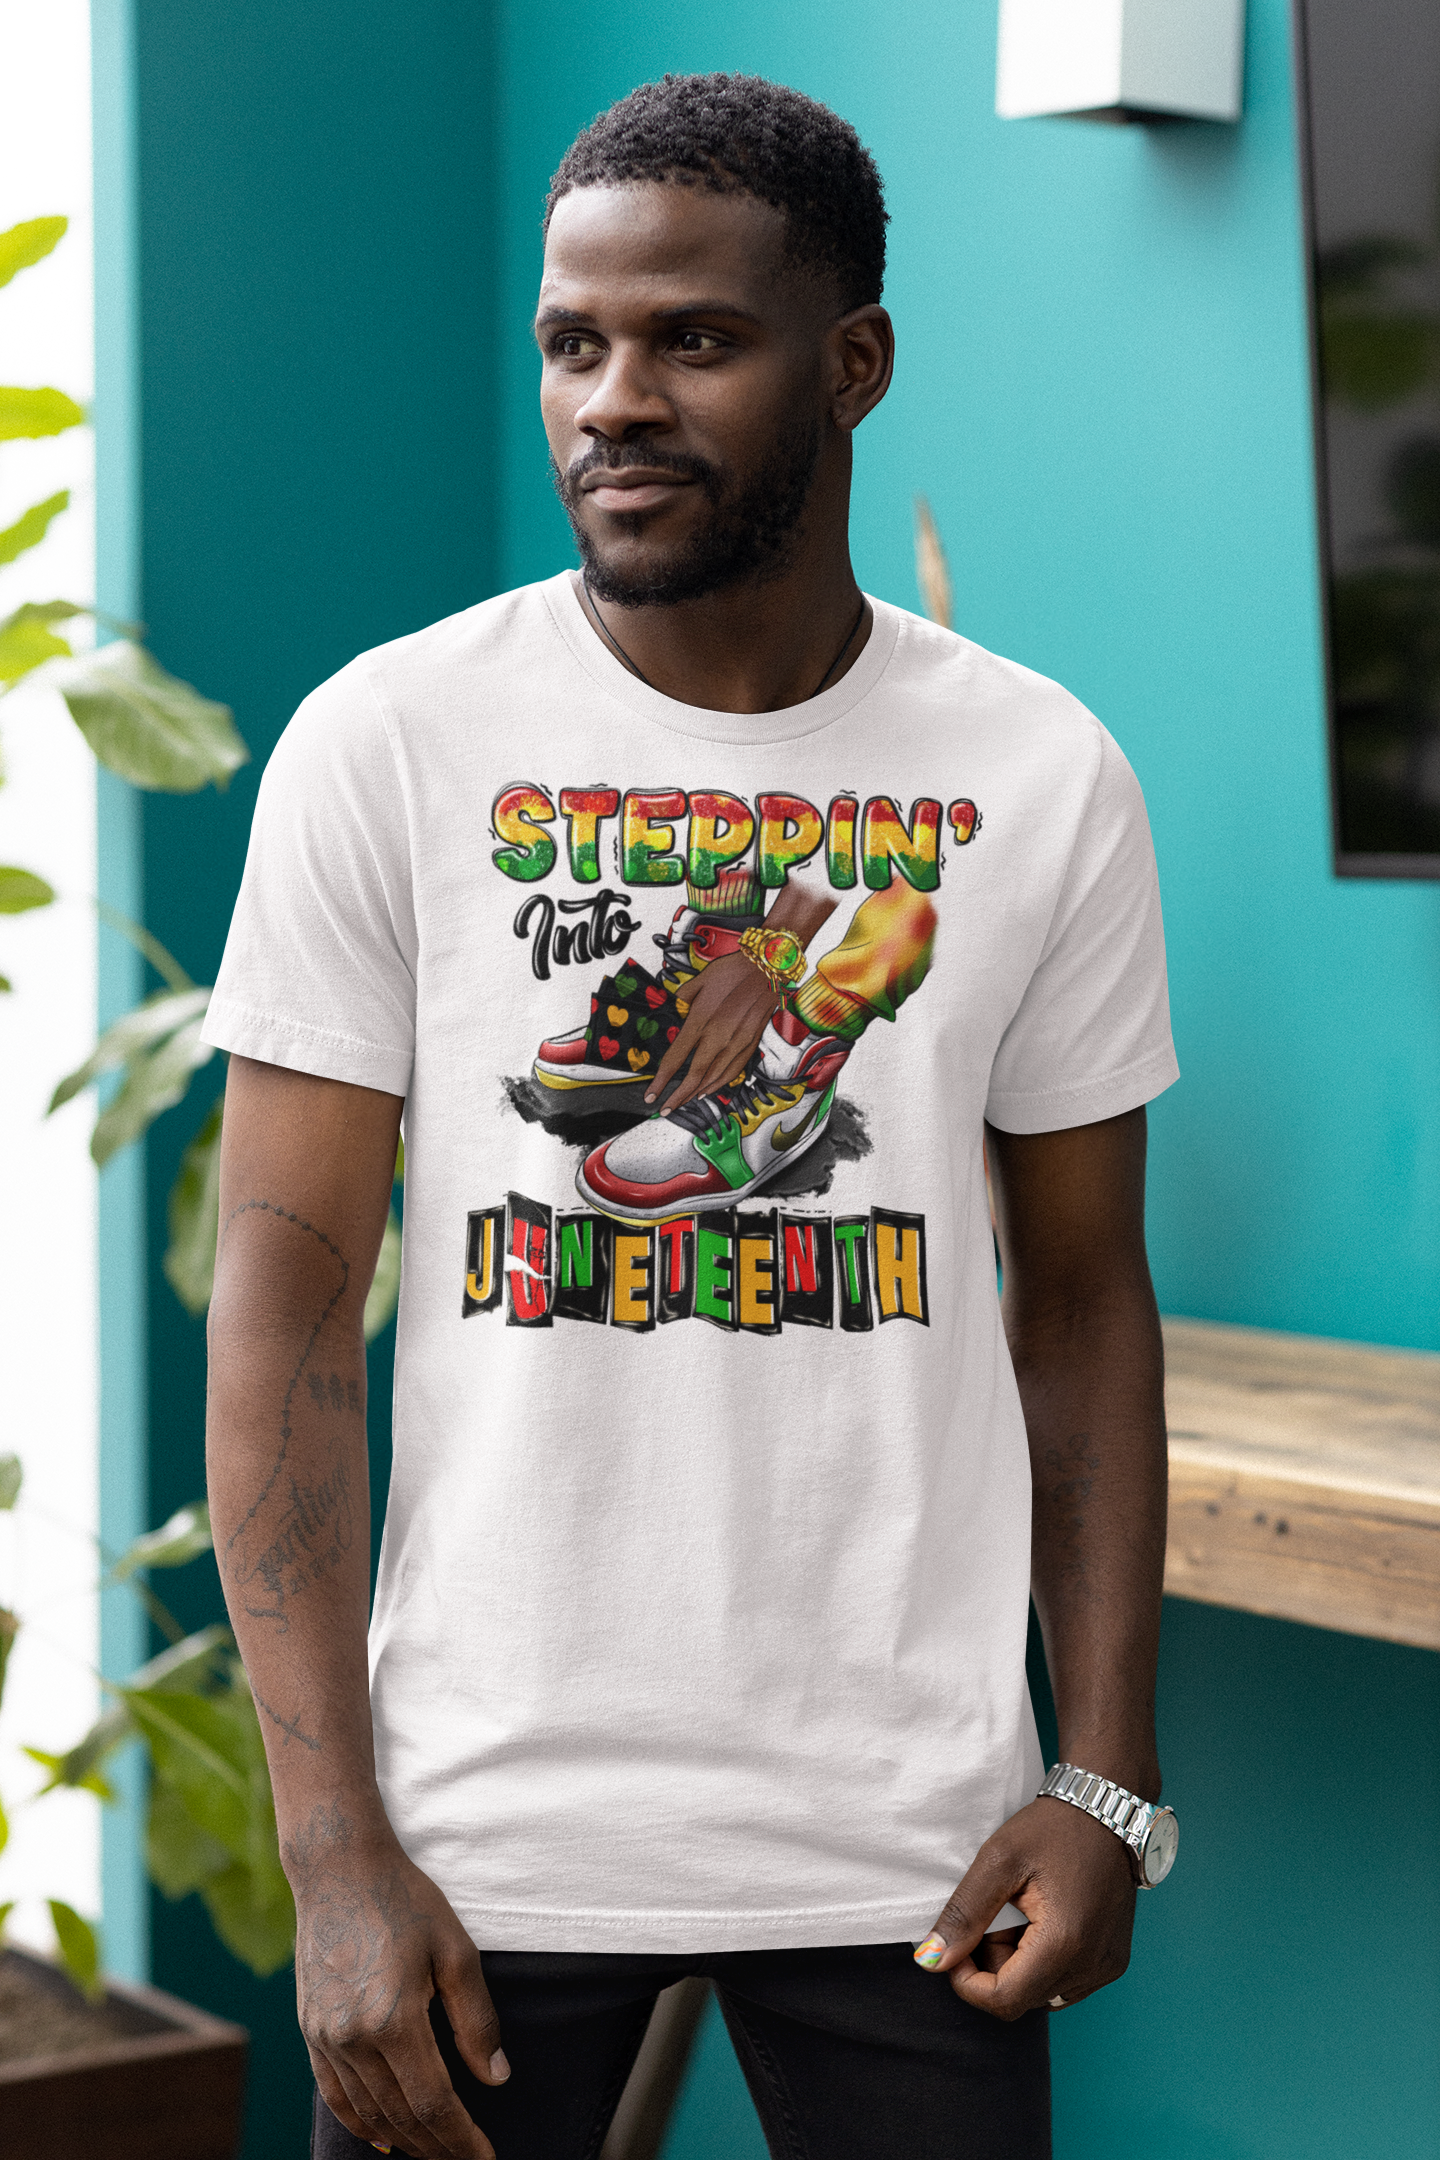 Steppin’ Into Juneteenth T-shirt